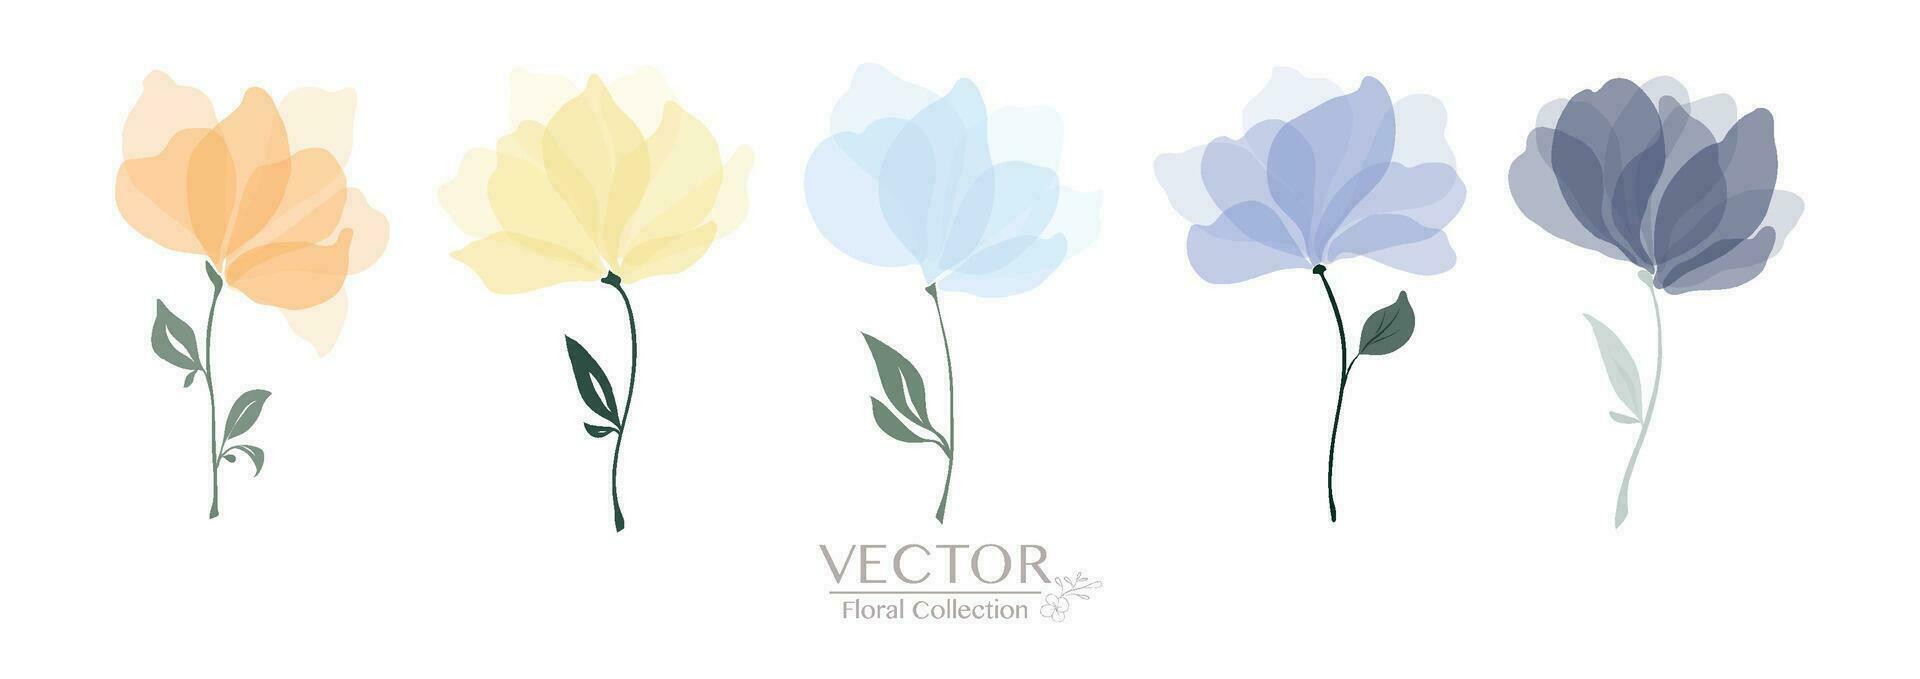 conjunto de vistoso floral colección vector